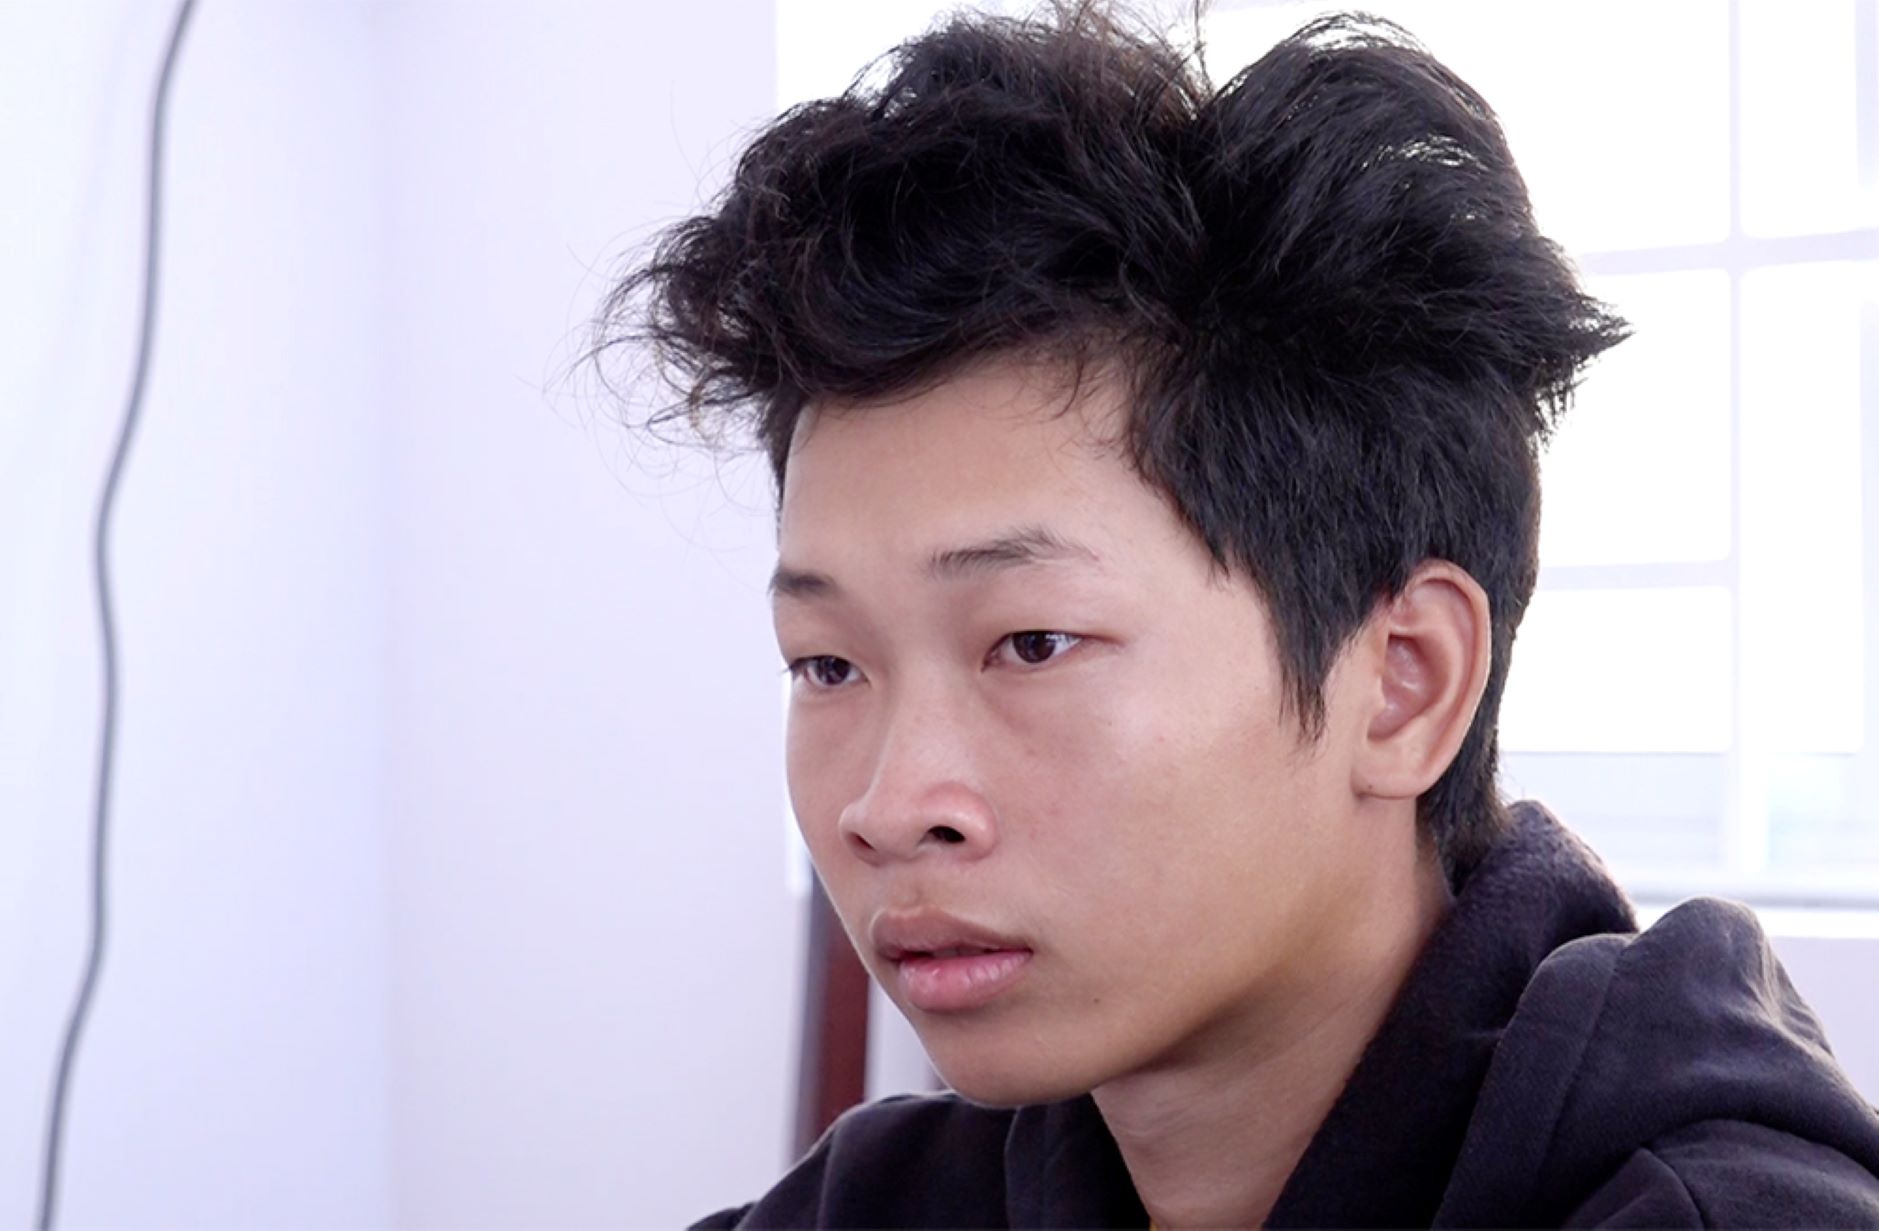 Phạm Thanh Bình Em bị cơ quan Công an bắt tạm giam về hành vi “Hiếp dâm người dưới 16 tuổi“. Ảnh: Vũ Tiến